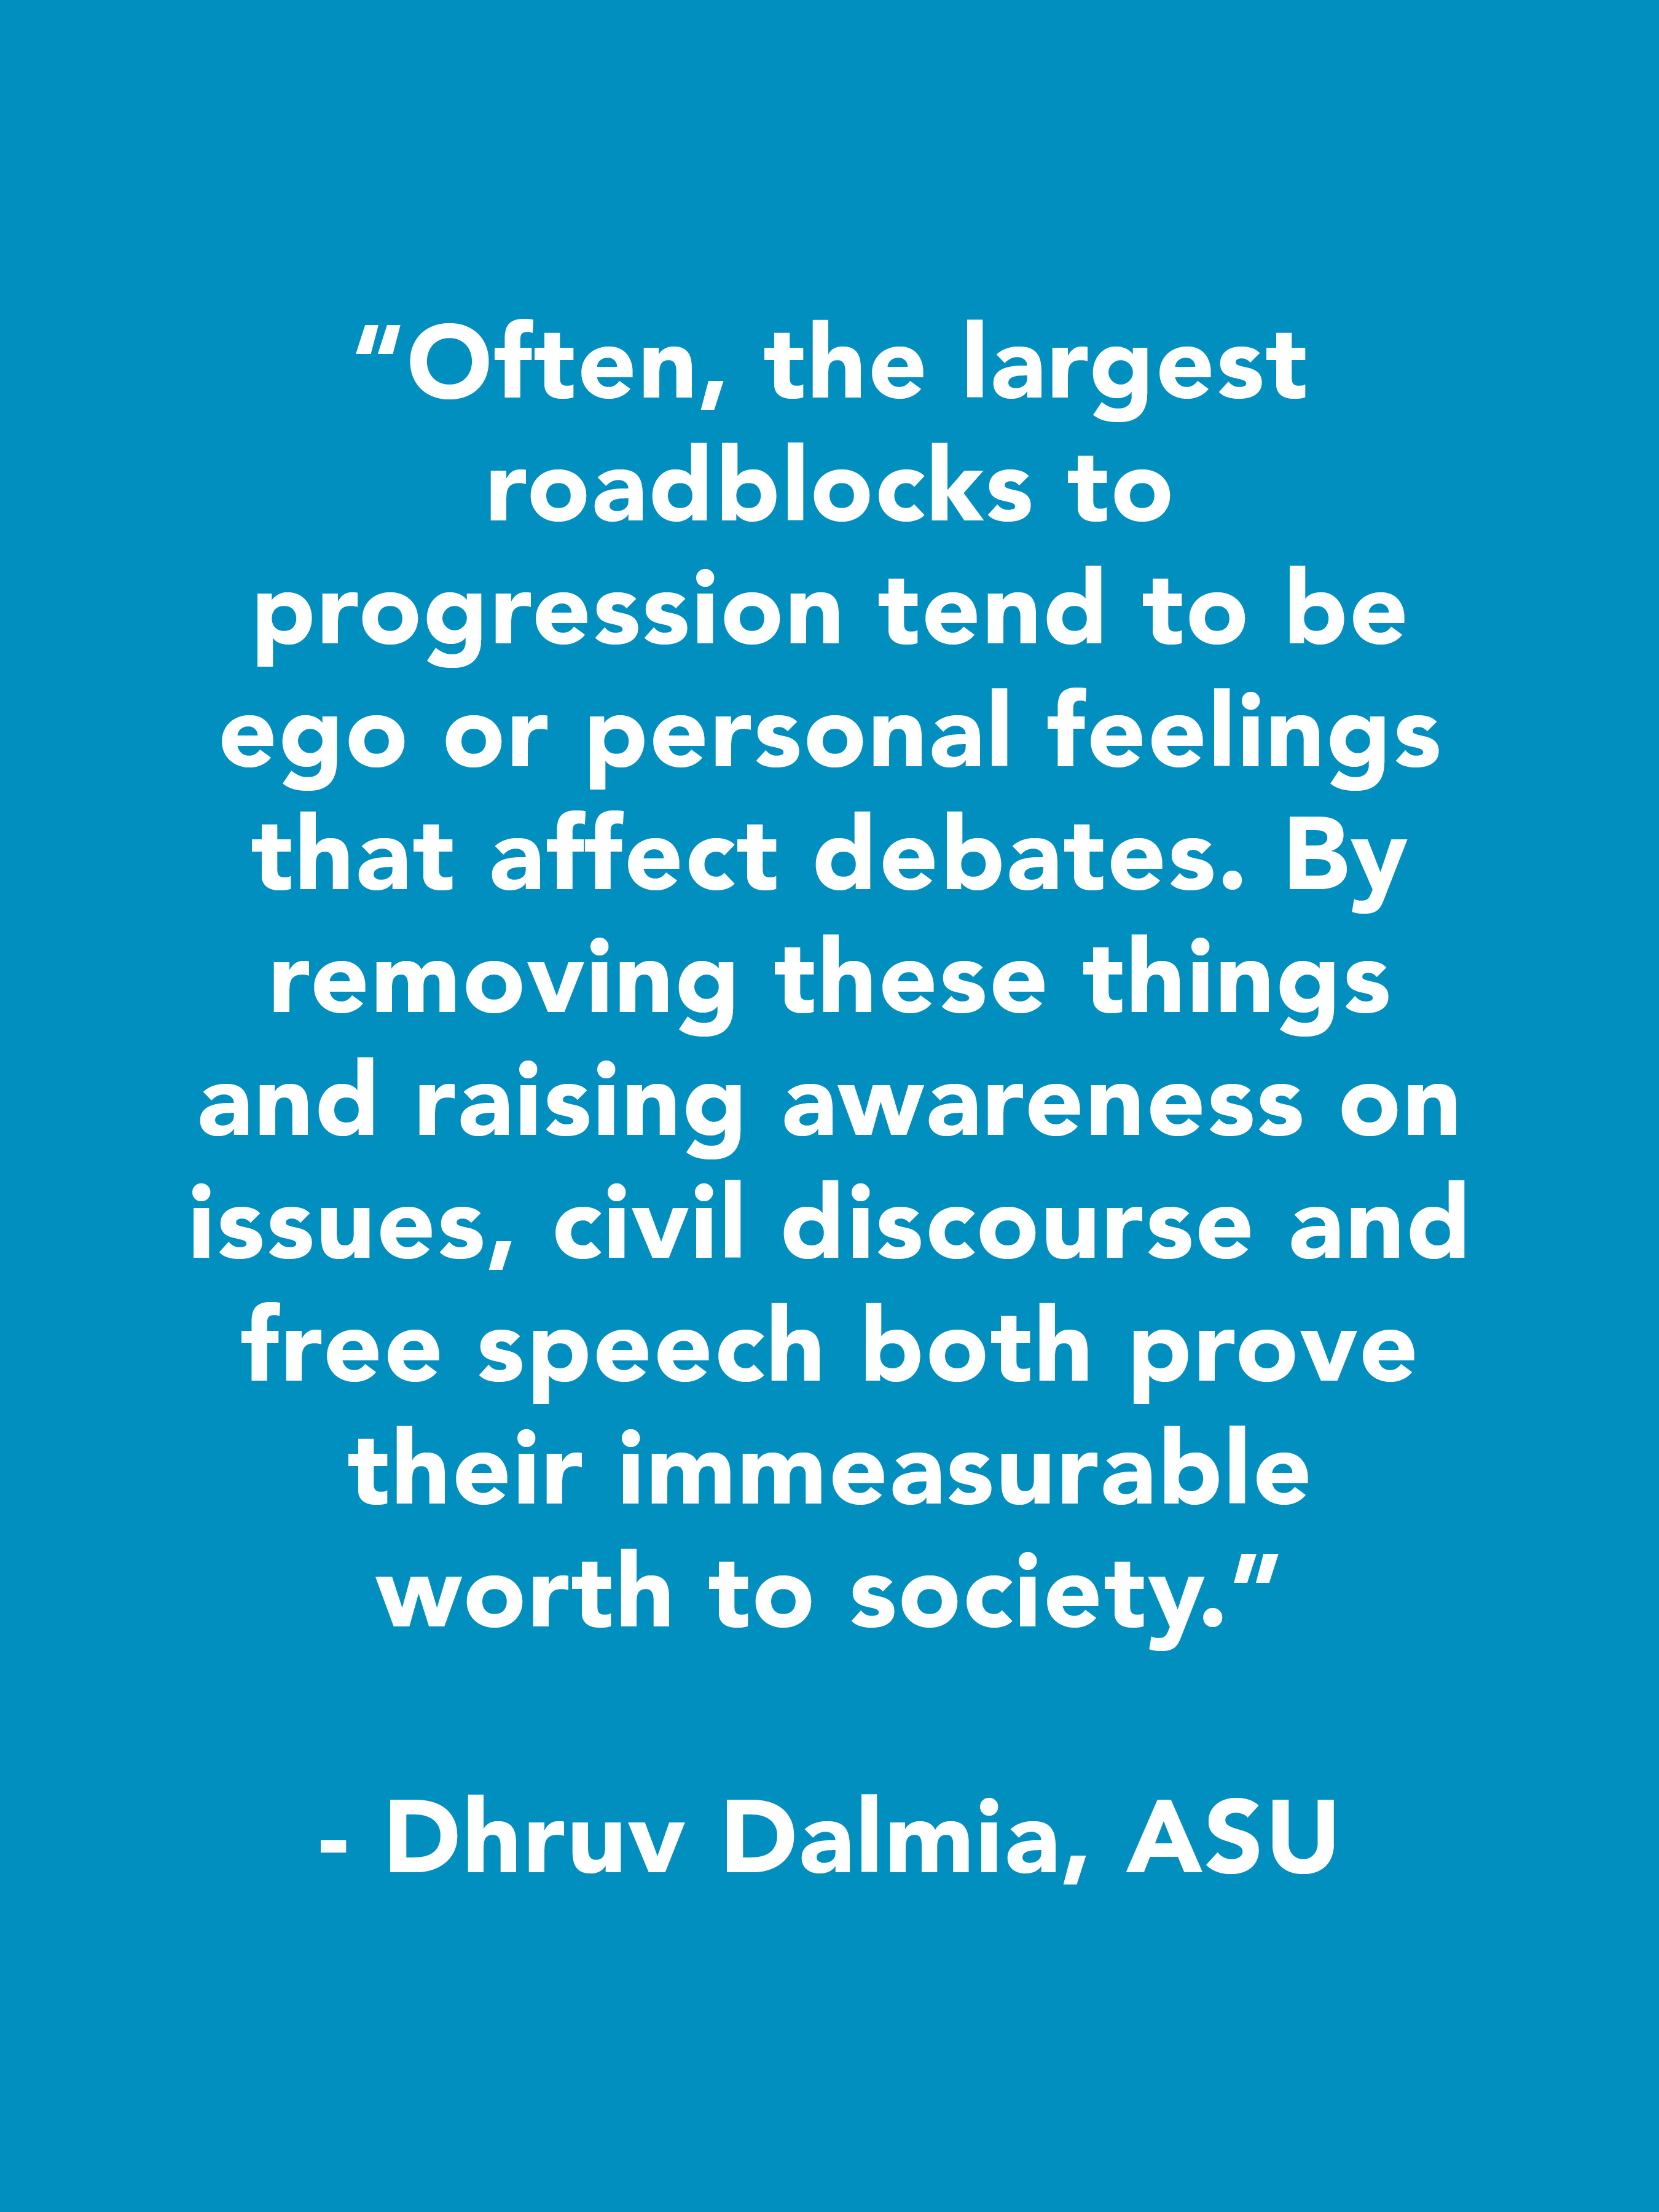 Dhruv Dalmia Quote, ASU -blue